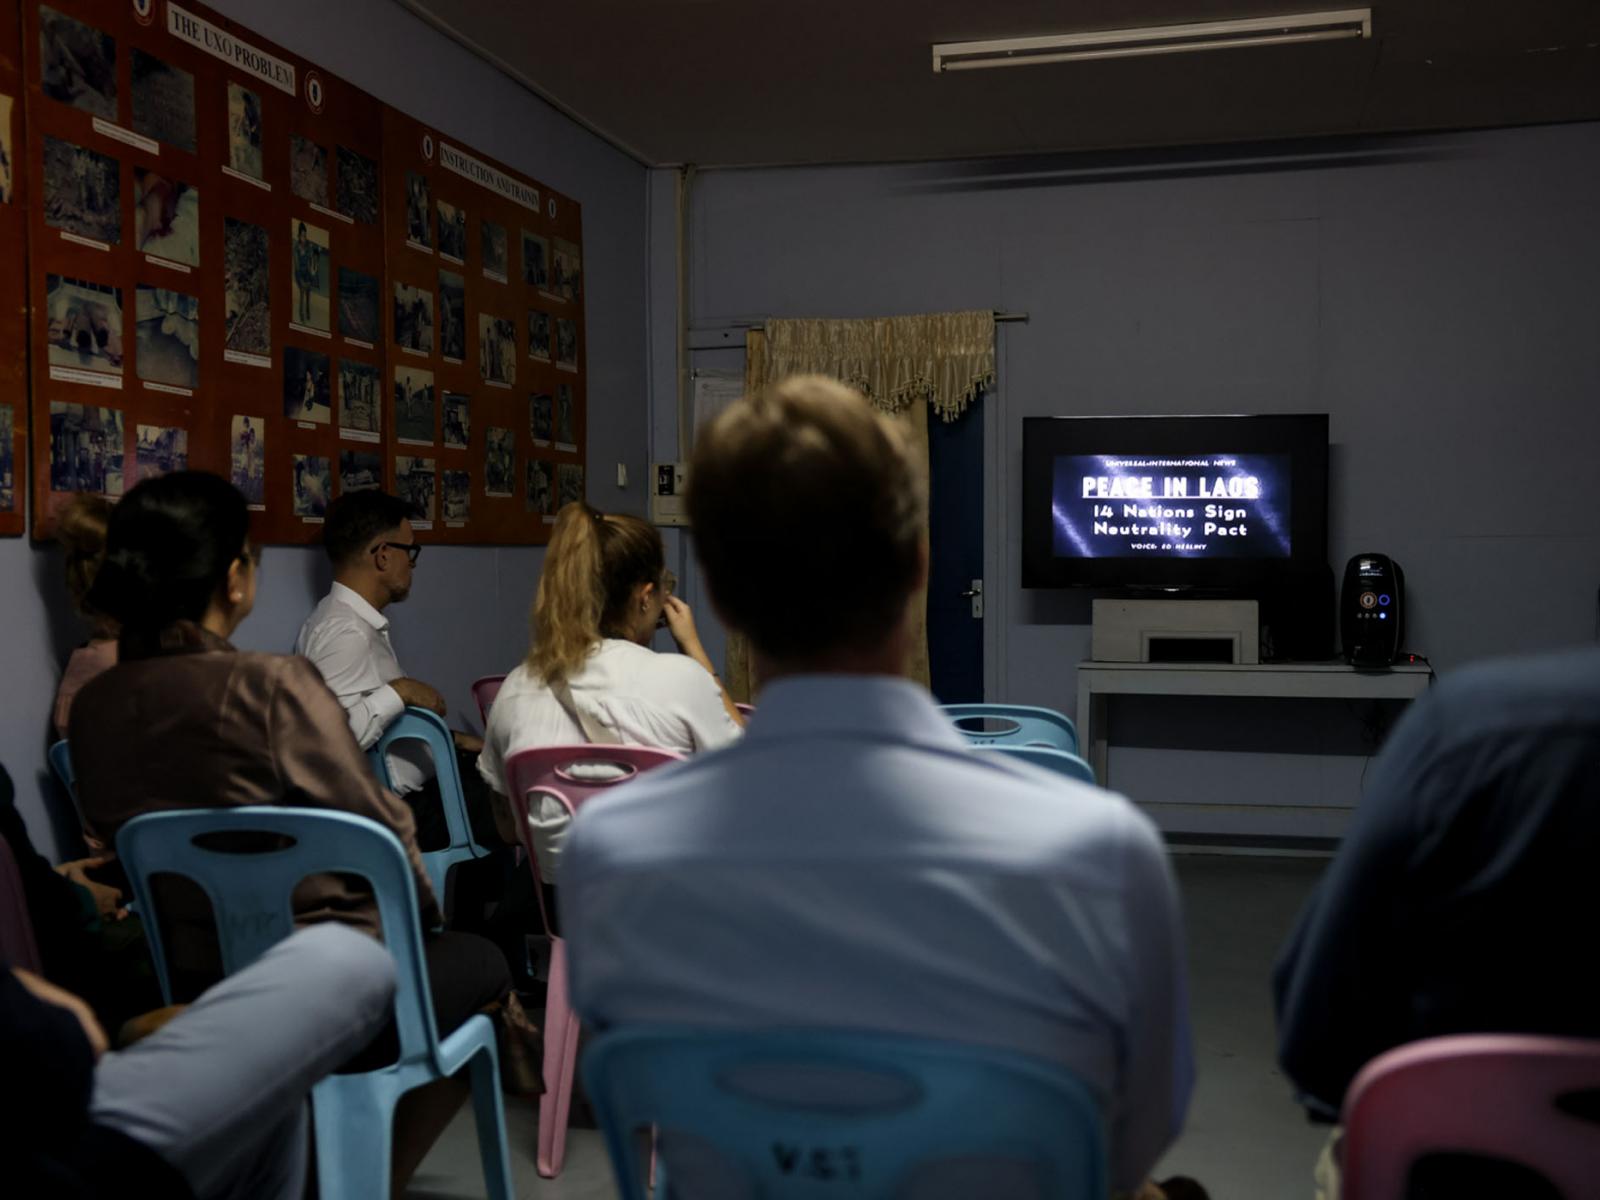 Le Grand-Duc et les visiteurs regardent un film sur la guerre au Laos